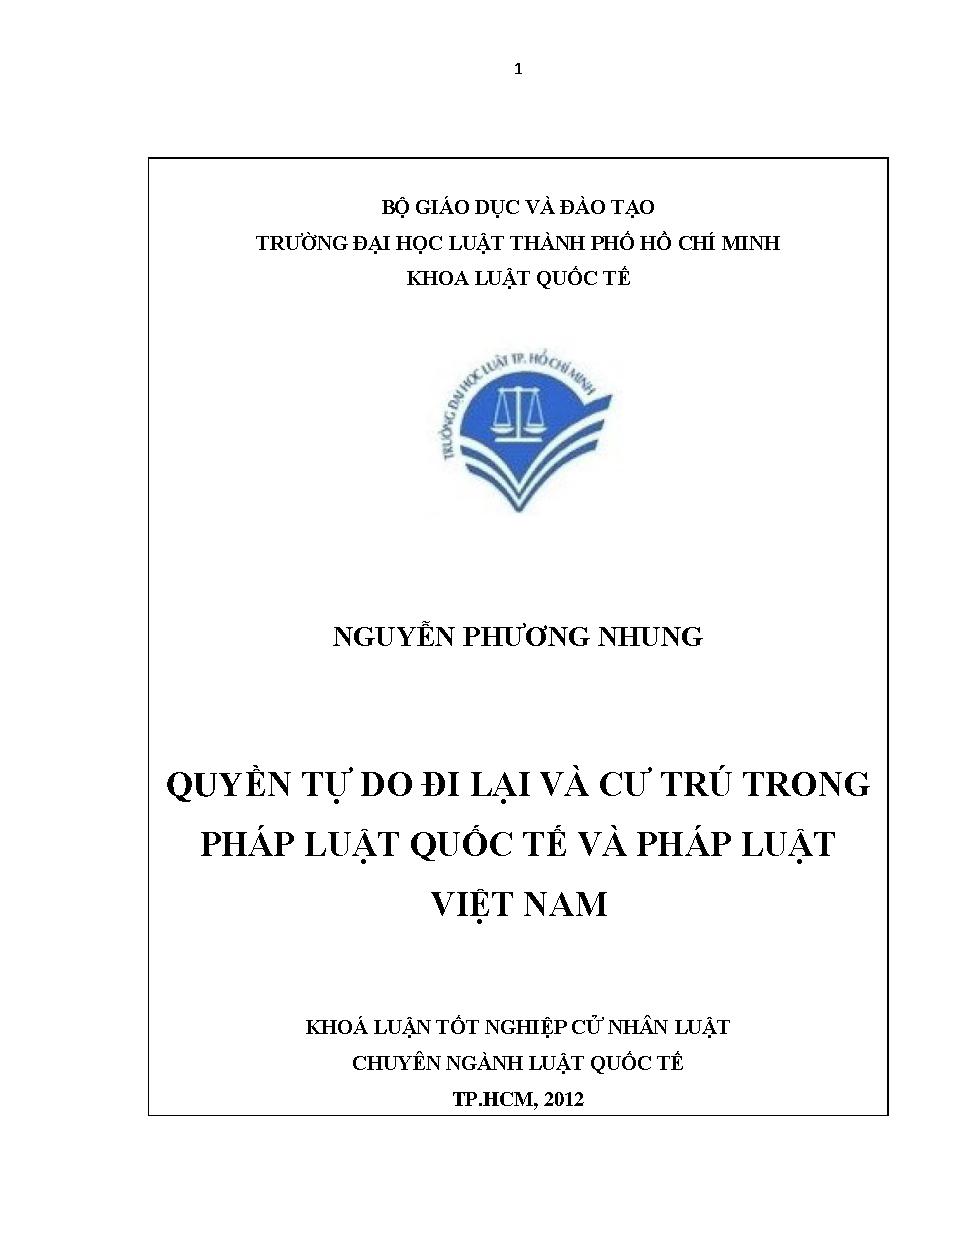 Quyền tự do đi lại và cư trú trong pháp luật quốc tế và pháp luật Việt Nam